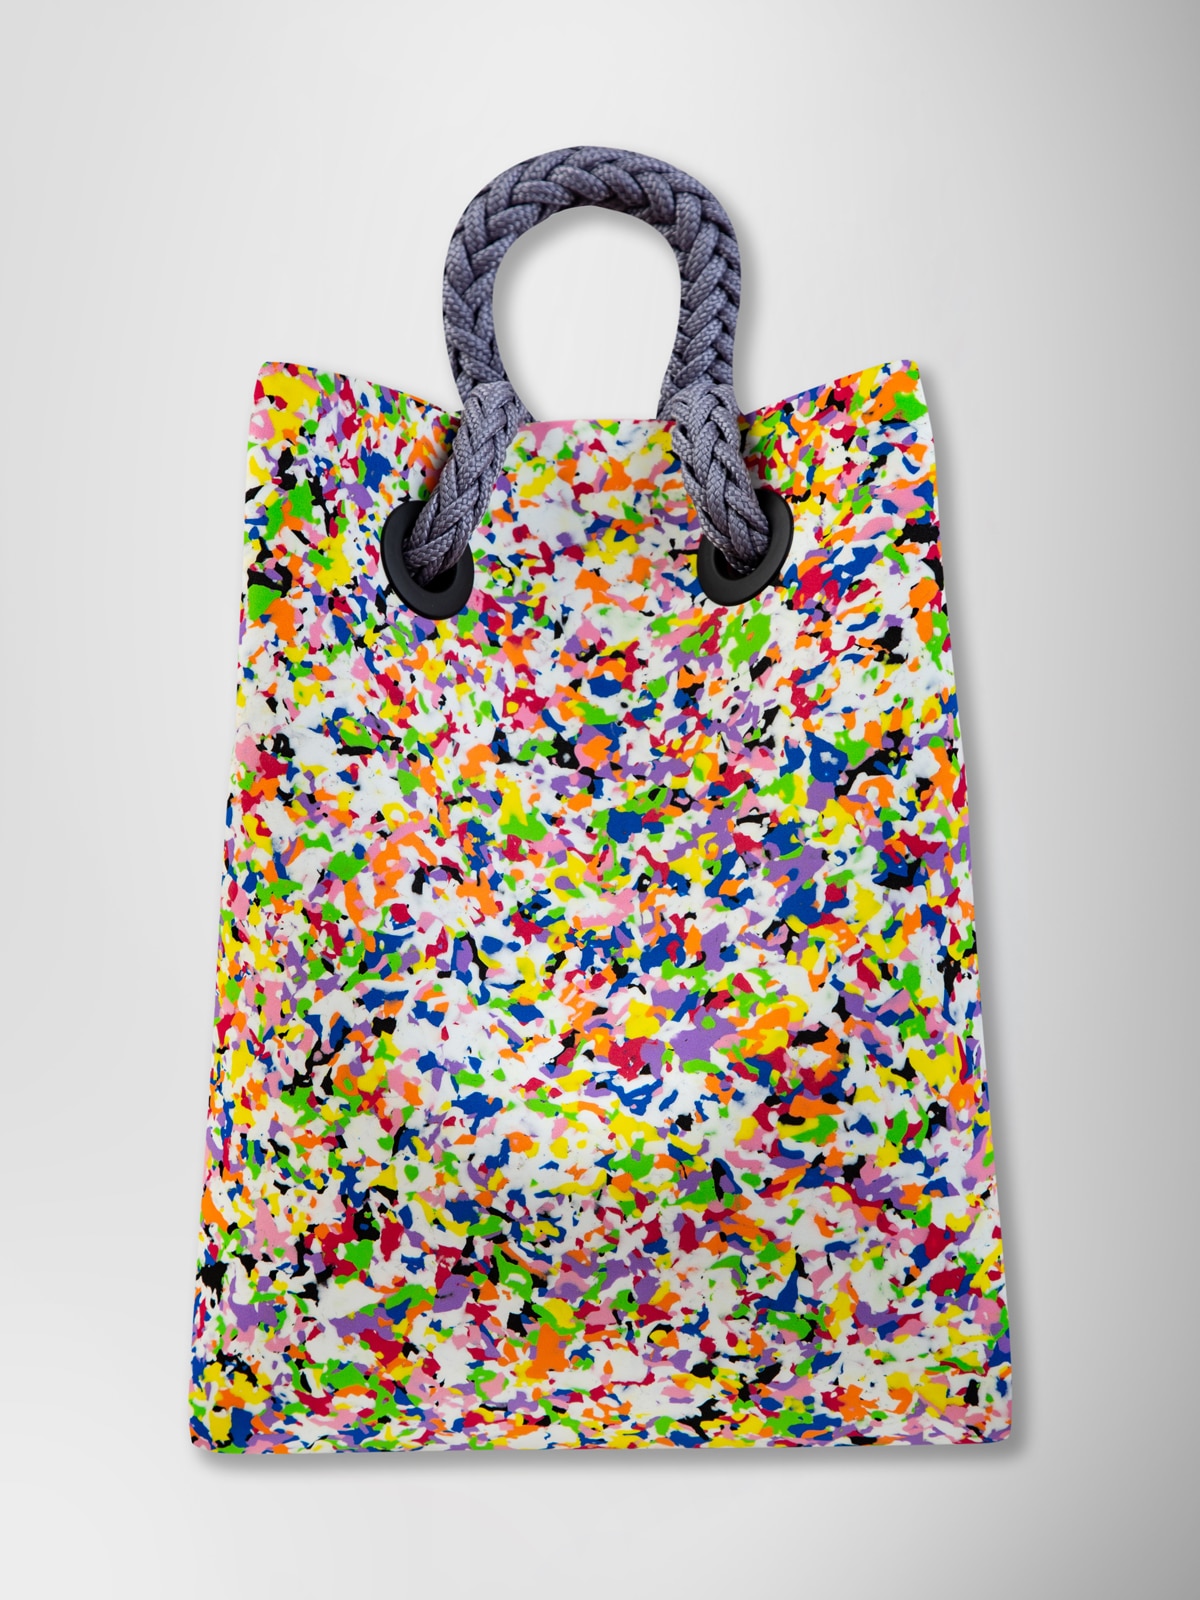 Backpack "EvaPack regular" in color flakes